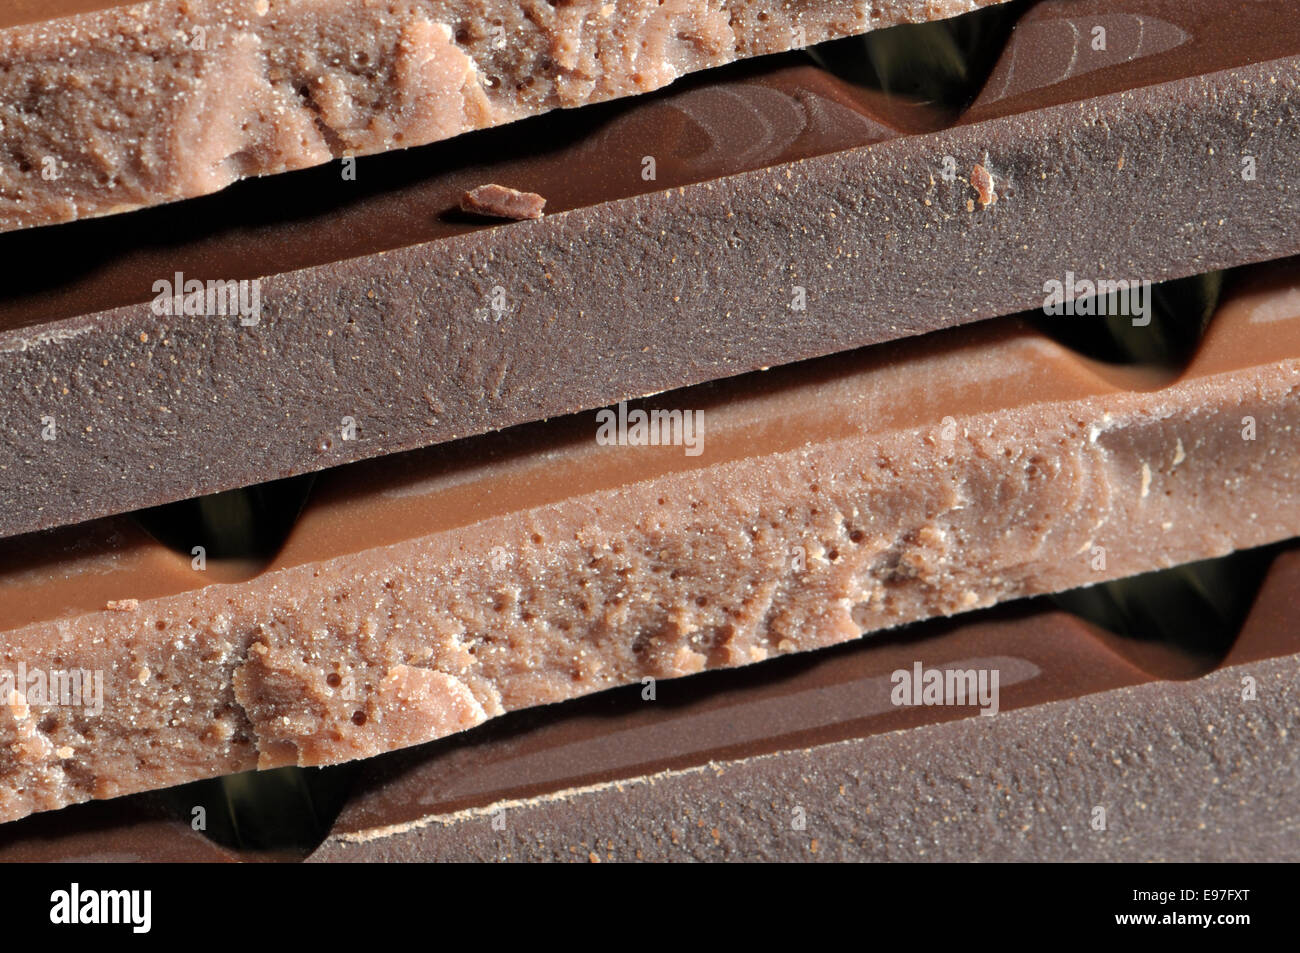 Layers of milk and dark chocolate bars Stock Photo